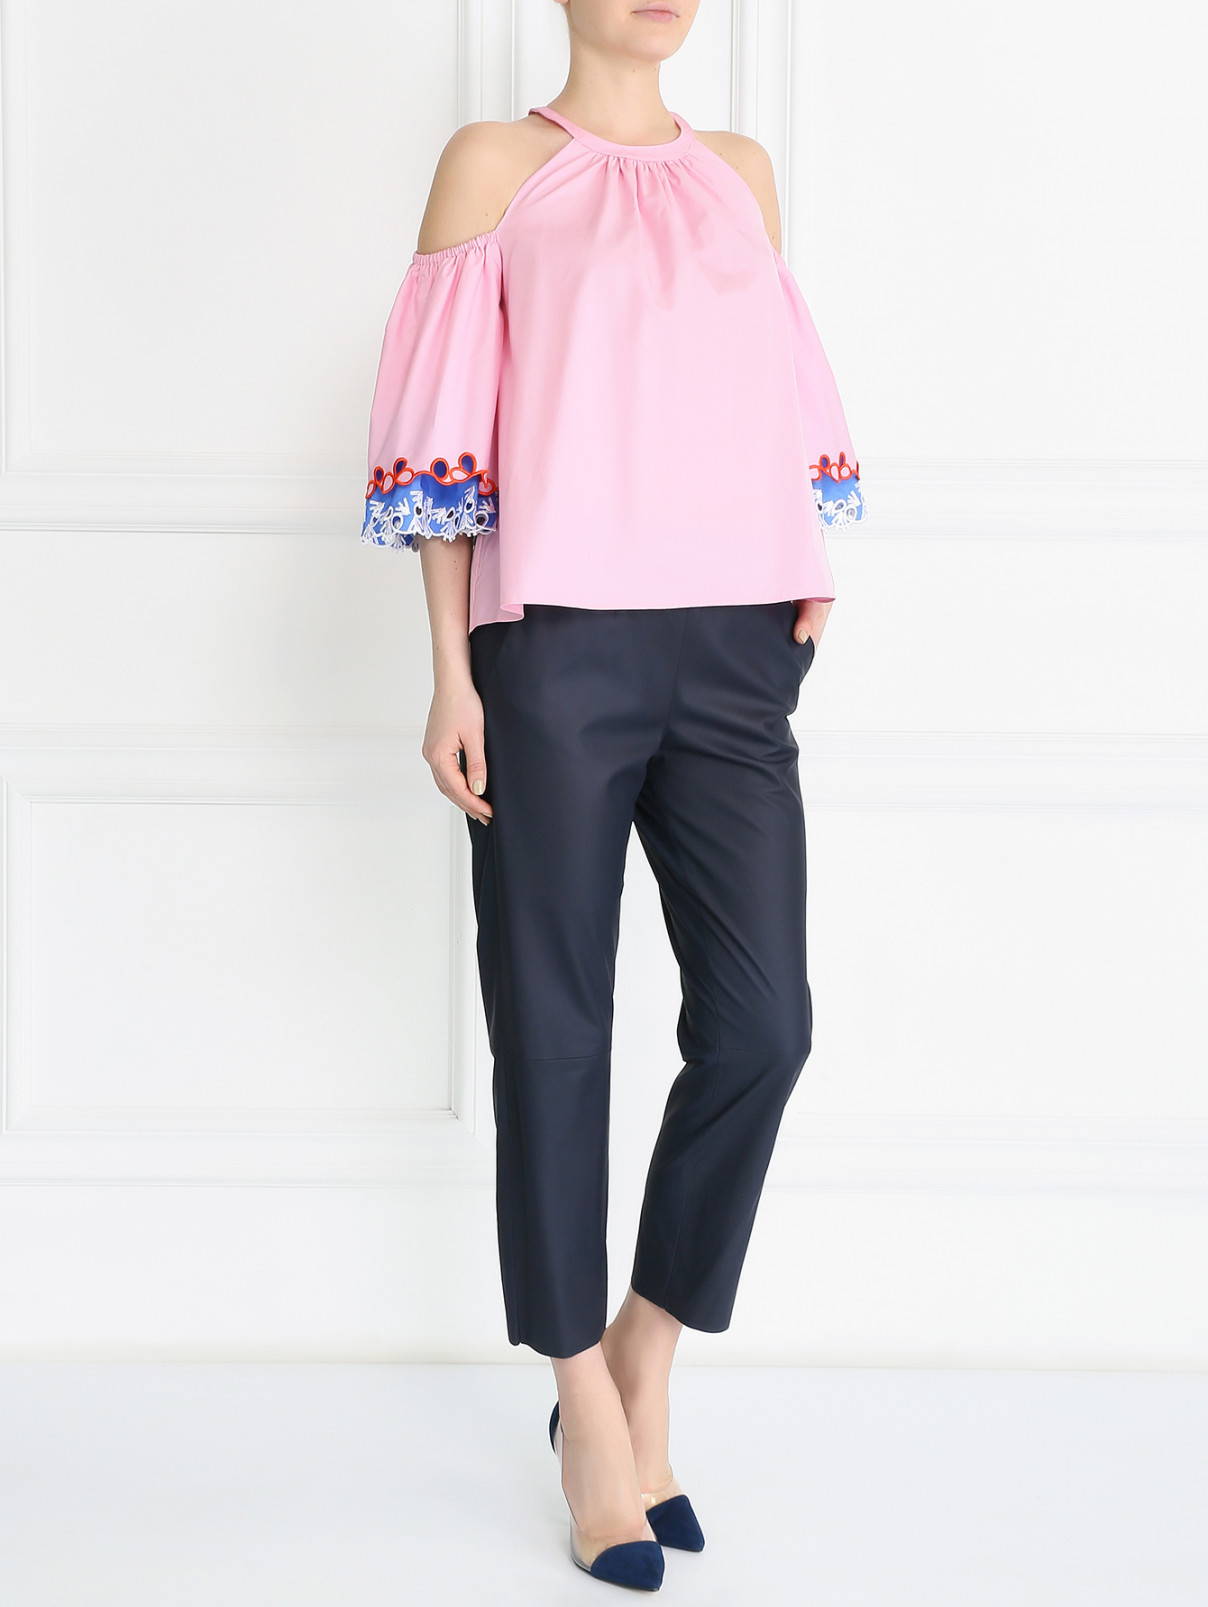 Укороченная блуза из хлопка с контрастной отделкой Peter Pilotto  –  Модель Общий вид  – Цвет:  Розовый